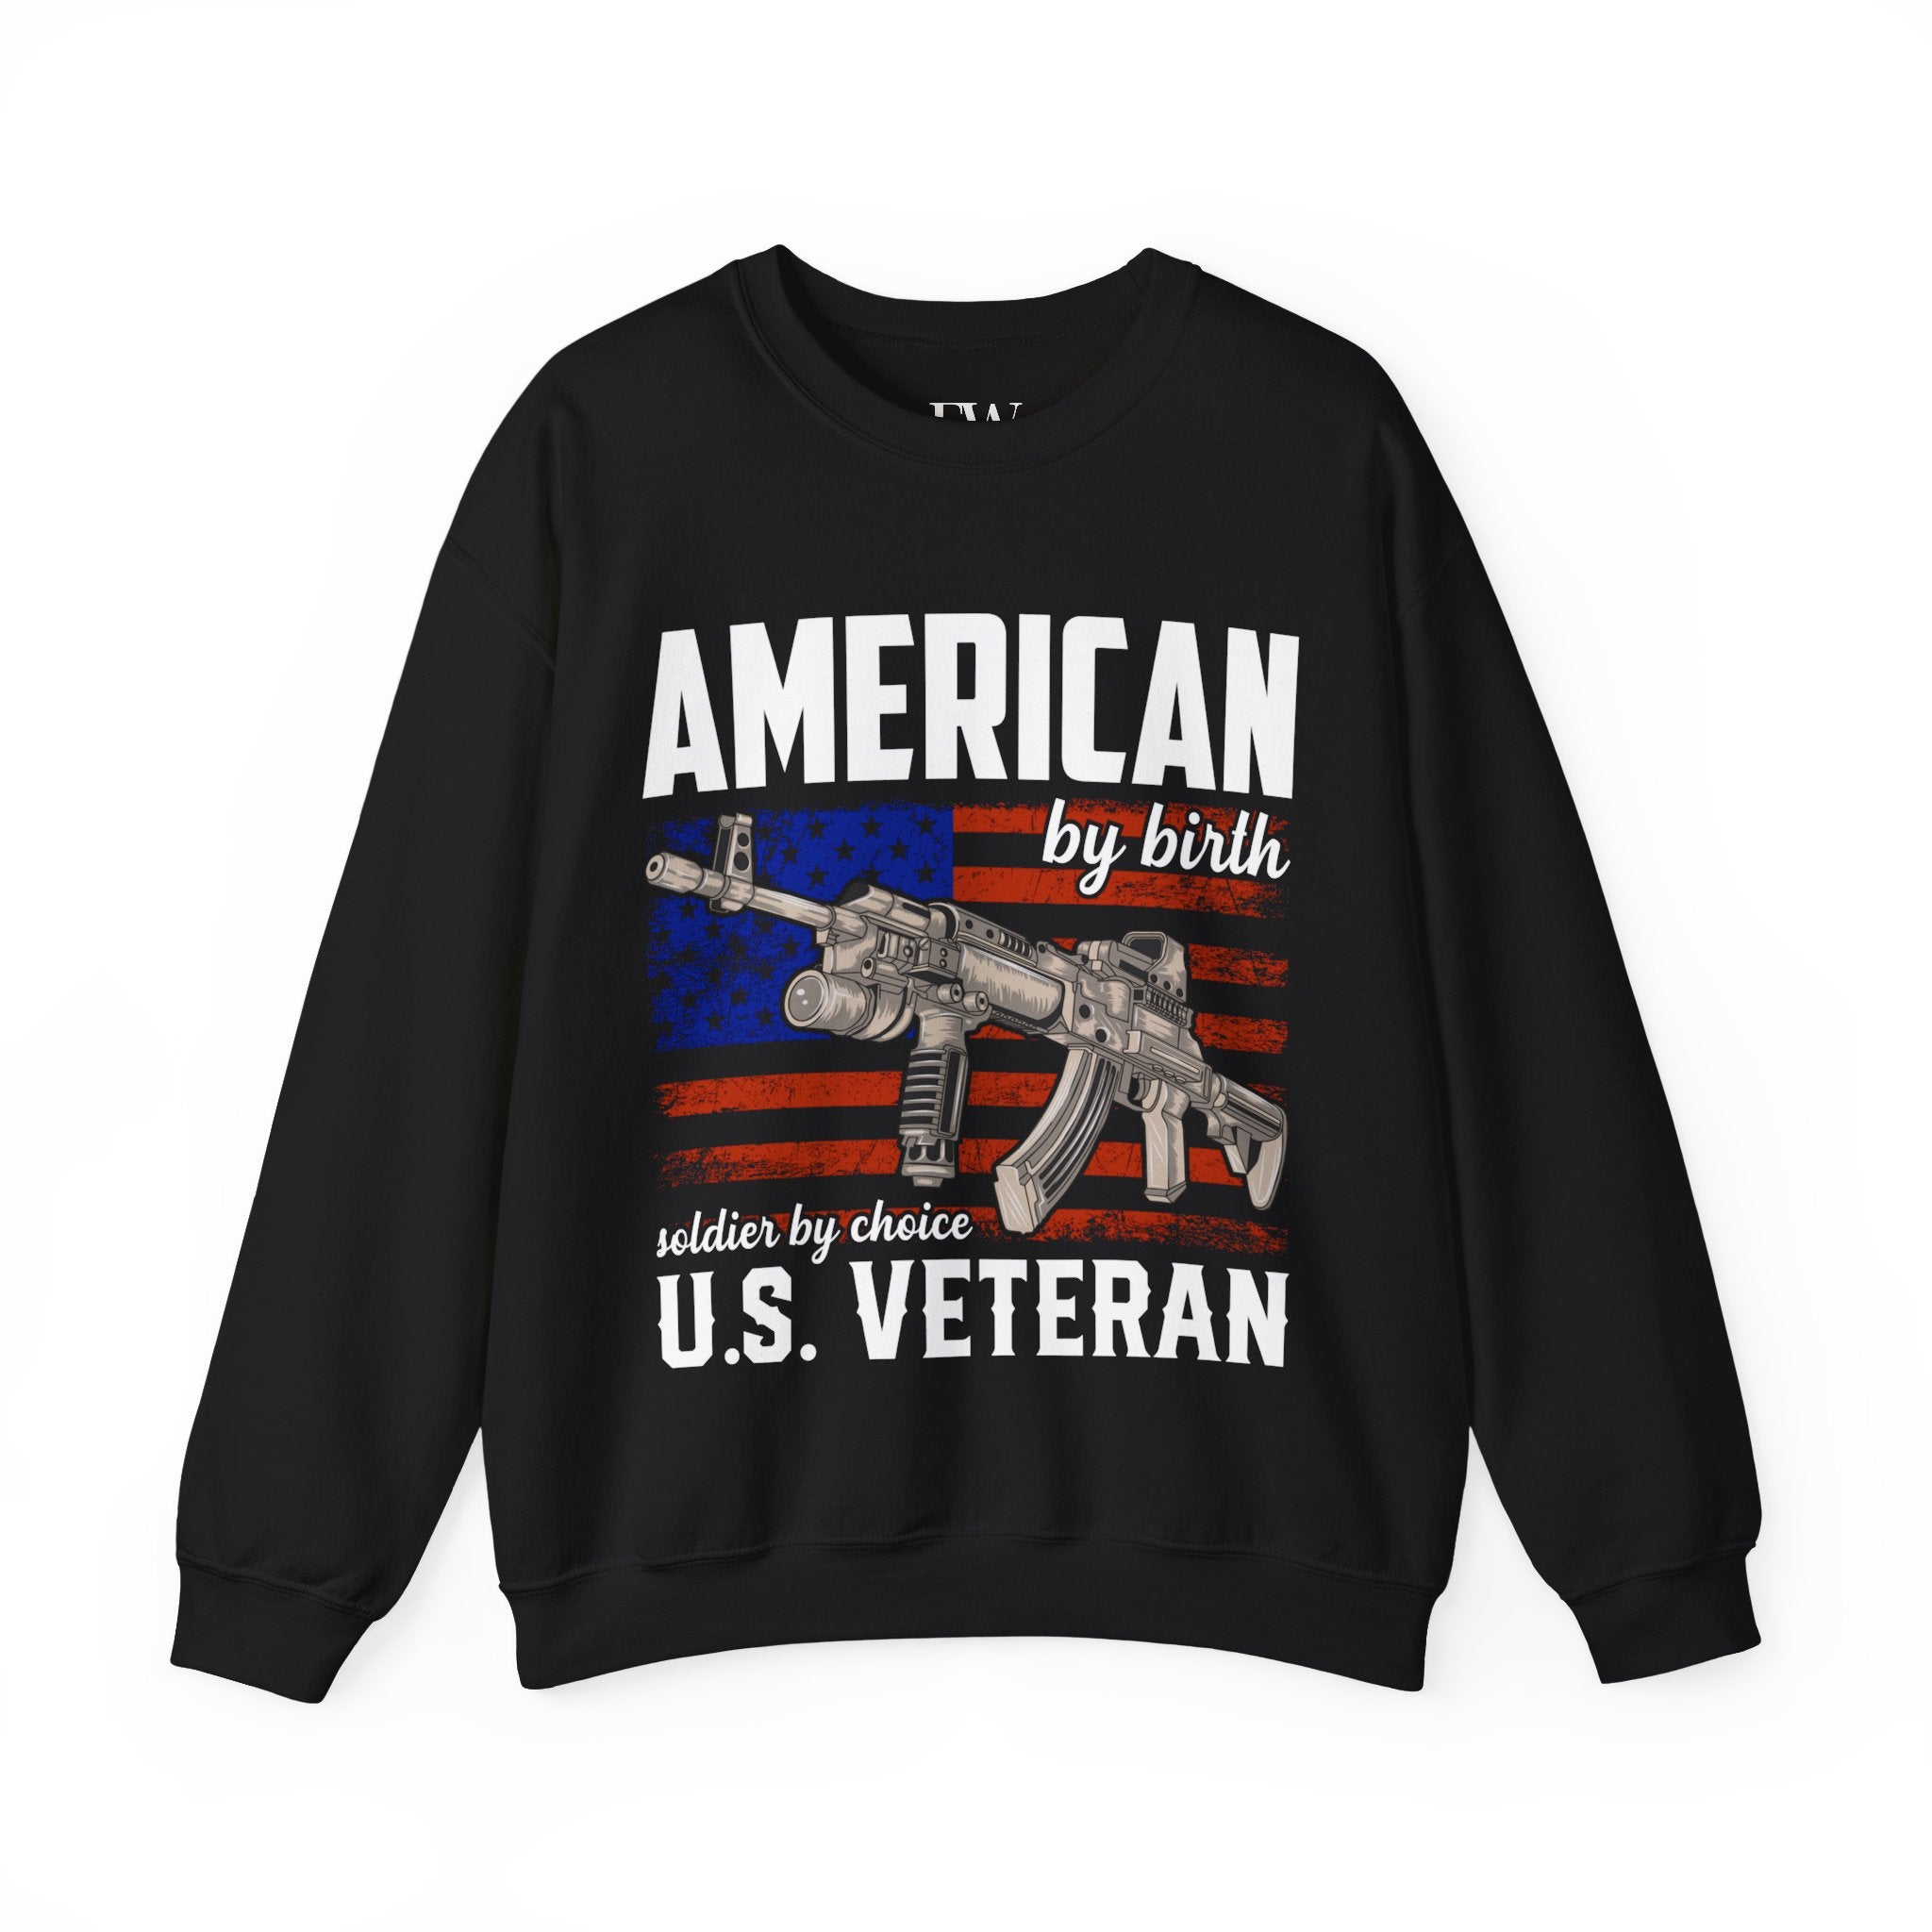 U.S. Veteran Patriotic Shirt